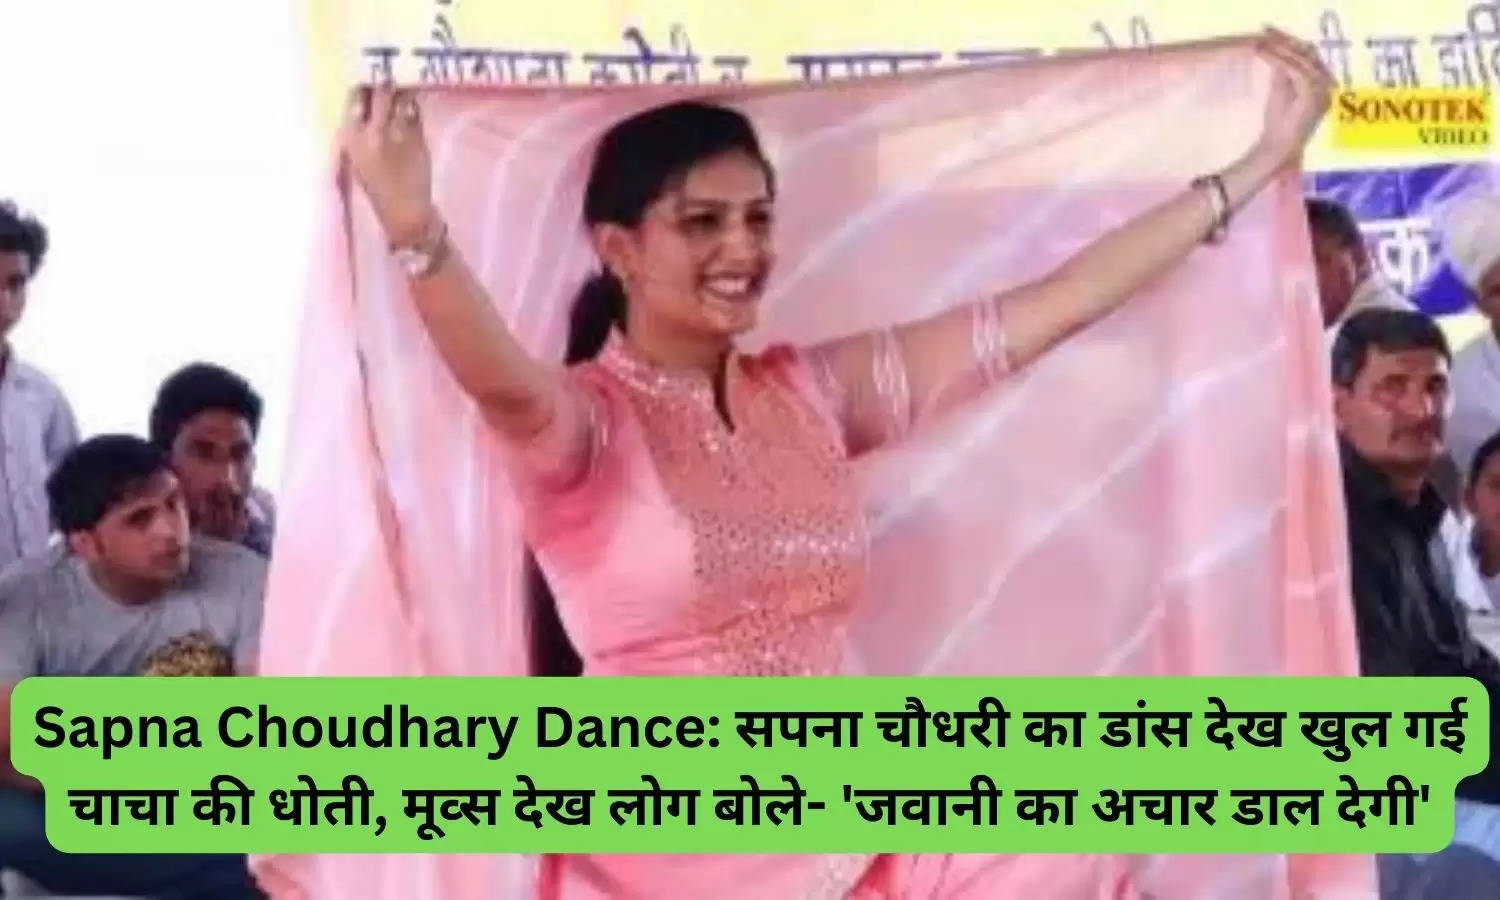 Sapna Choudhary Dance: सपना चौधरी का डांस देख खुल गई चाचा की धोती, मूव्स देख लोग बोले- 'जवानी का अचार डाल देगी'